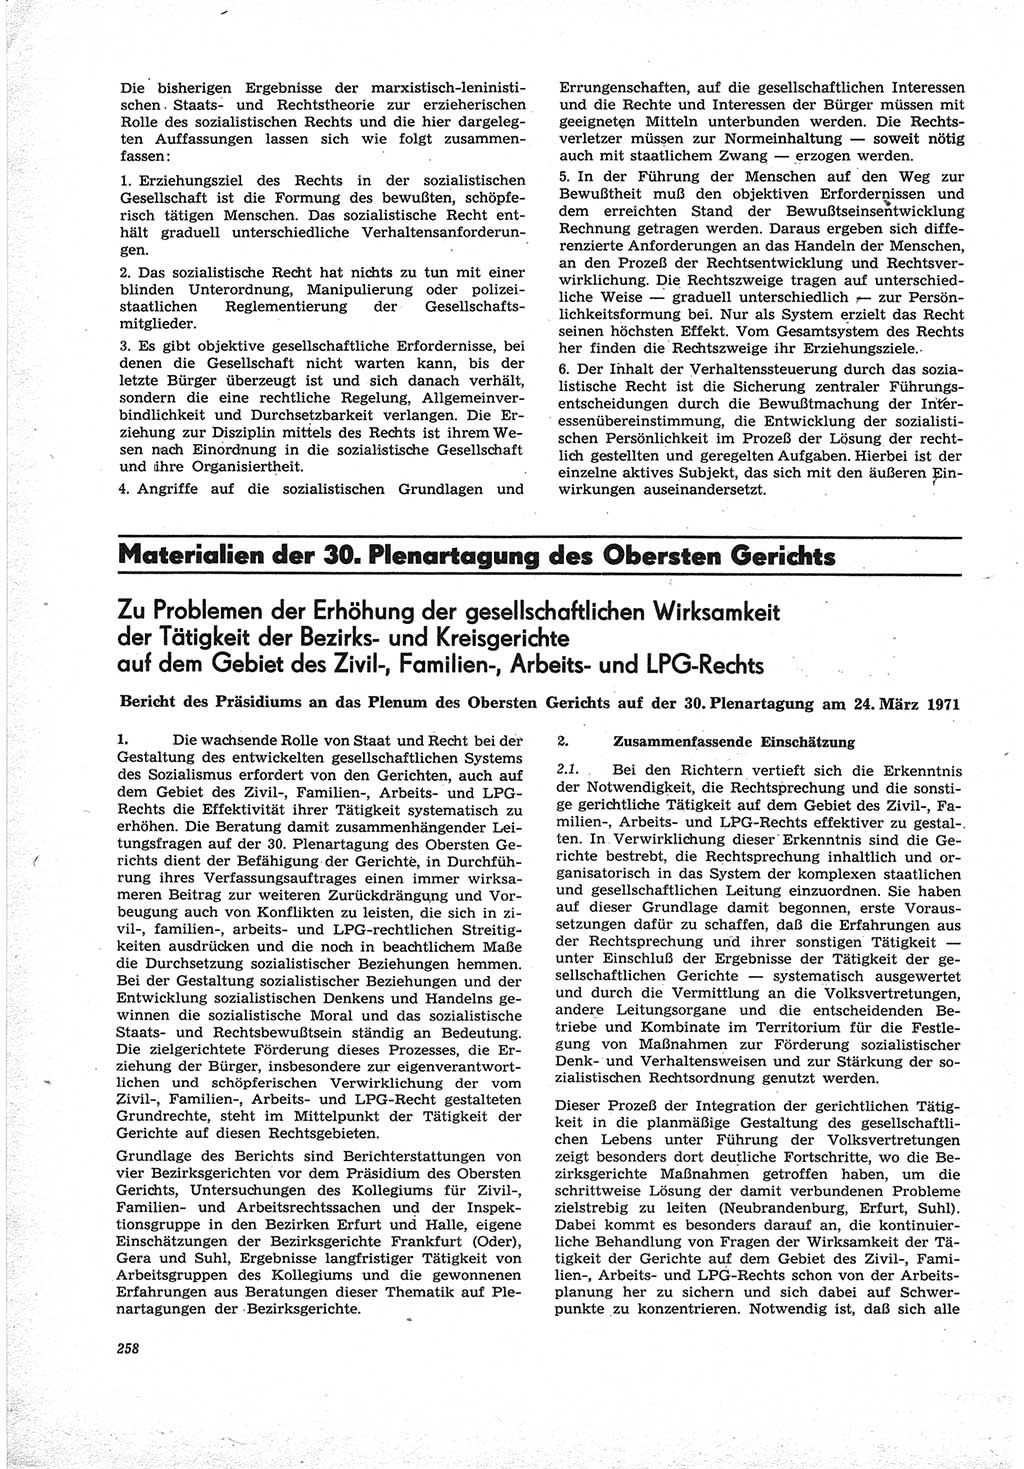 Neue Justiz (NJ), Zeitschrift für Recht und Rechtswissenschaft [Deutsche Demokratische Republik (DDR)], 25. Jahrgang 1971, Seite 258 (NJ DDR 1971, S. 258)